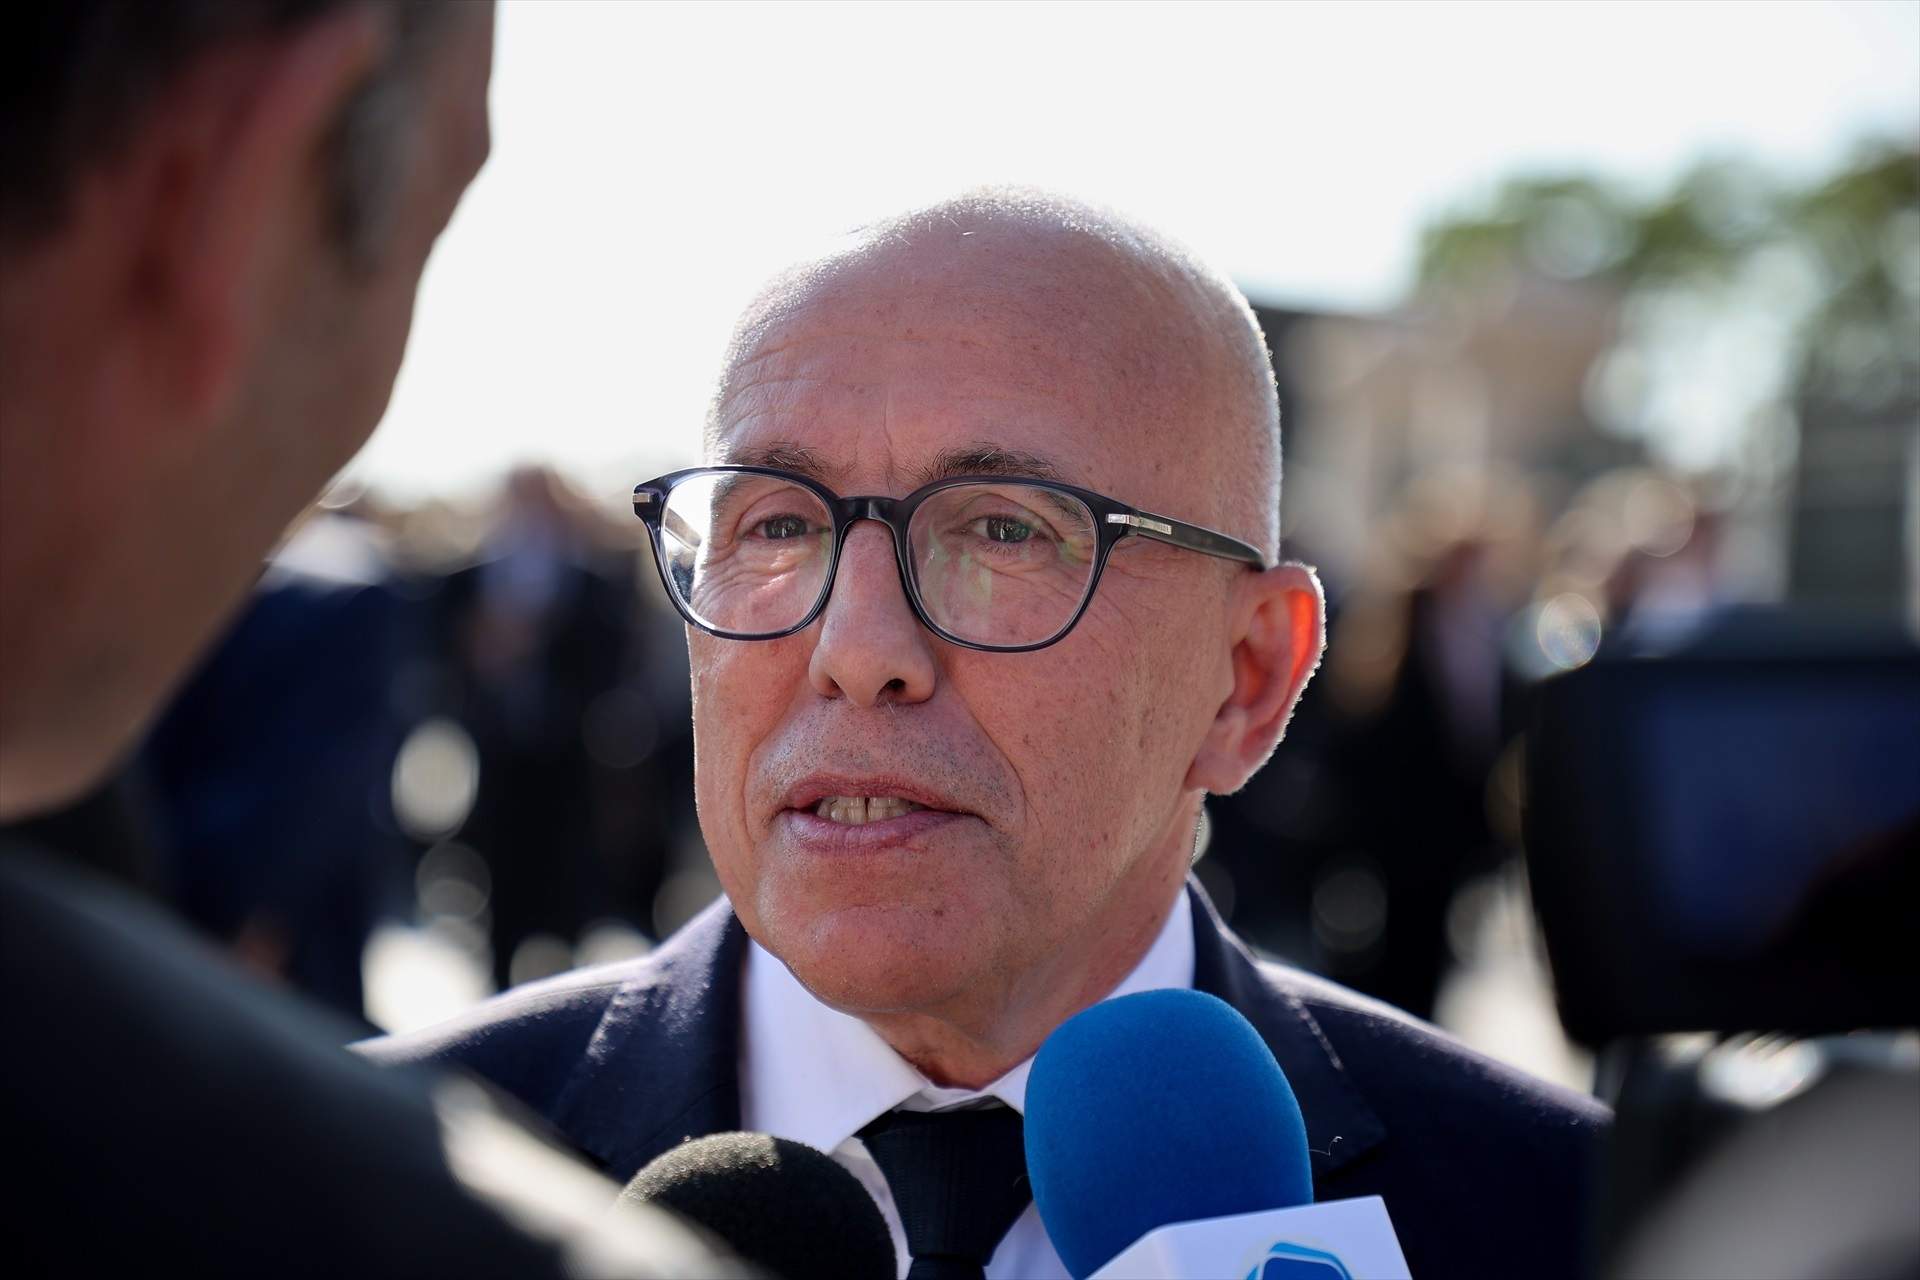 La justícia francesa suspèn l'expulsió de Ciotti, que manté el seu càrrec com a líder conservador